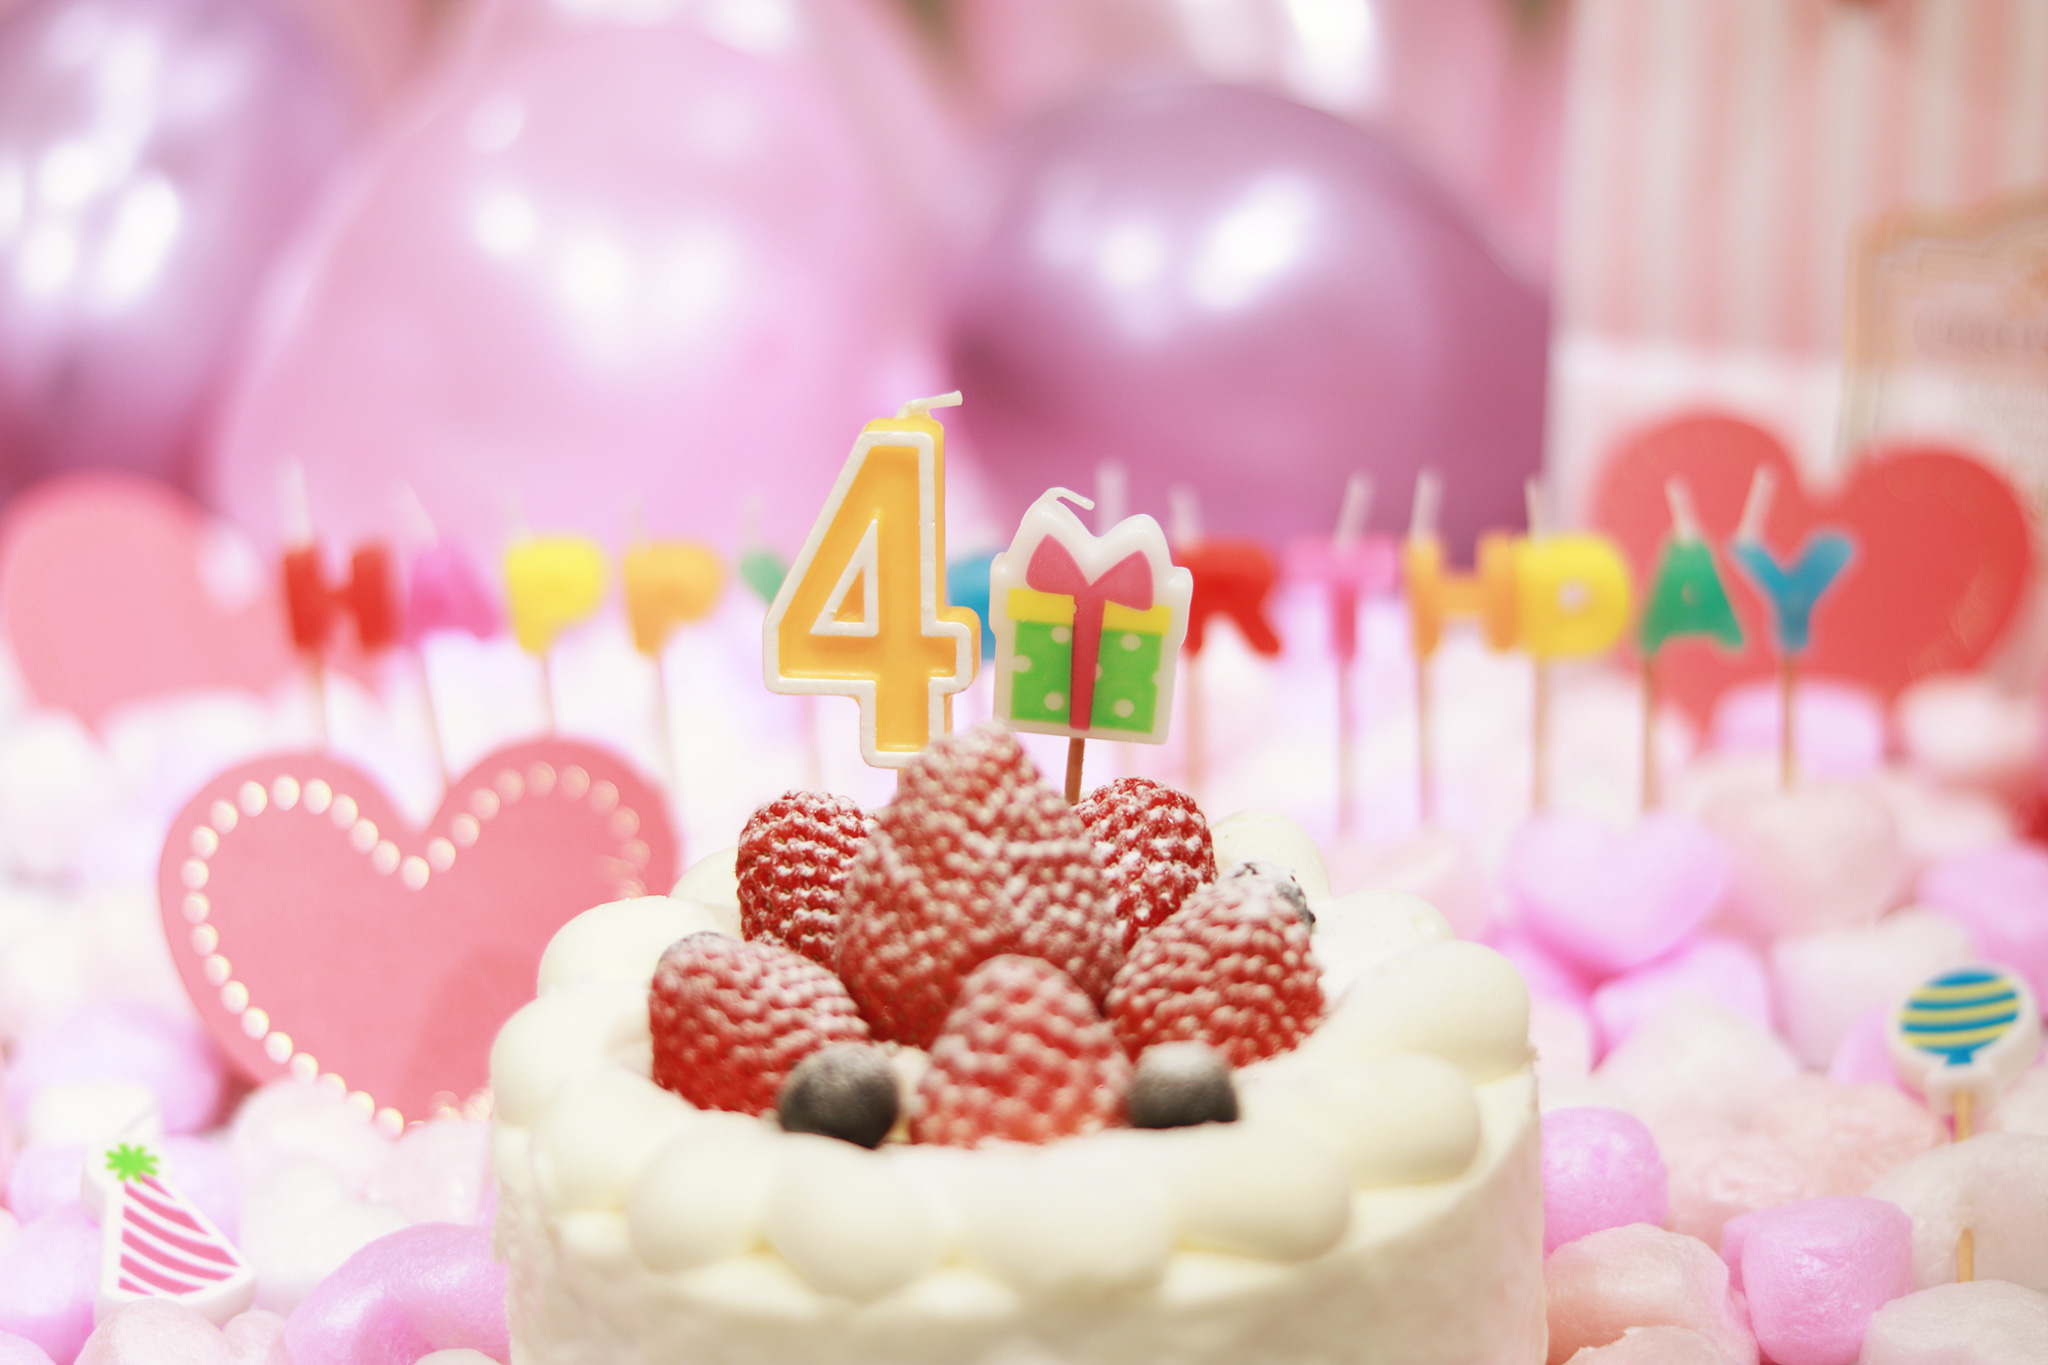 オシャレな誕生日画像 可愛いケーキとキャンドルでお祝い 4 歳編 のフリー画像 おしゃれなフリー写真素材 Girly Drop